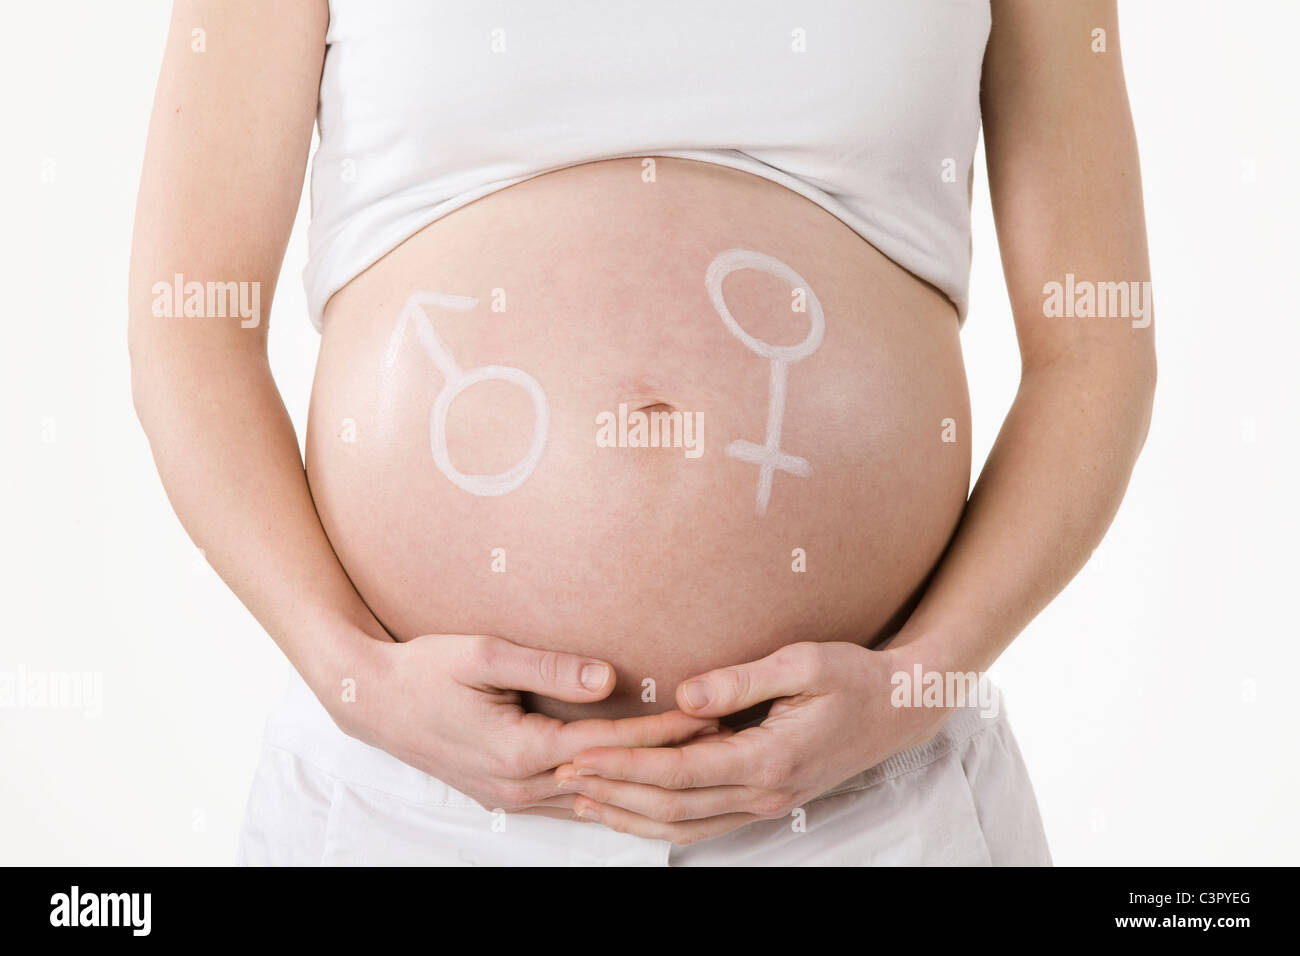 Símbolo masculino y femenino dibujados en el vientre de una mujer embarazada, central Foto de stock